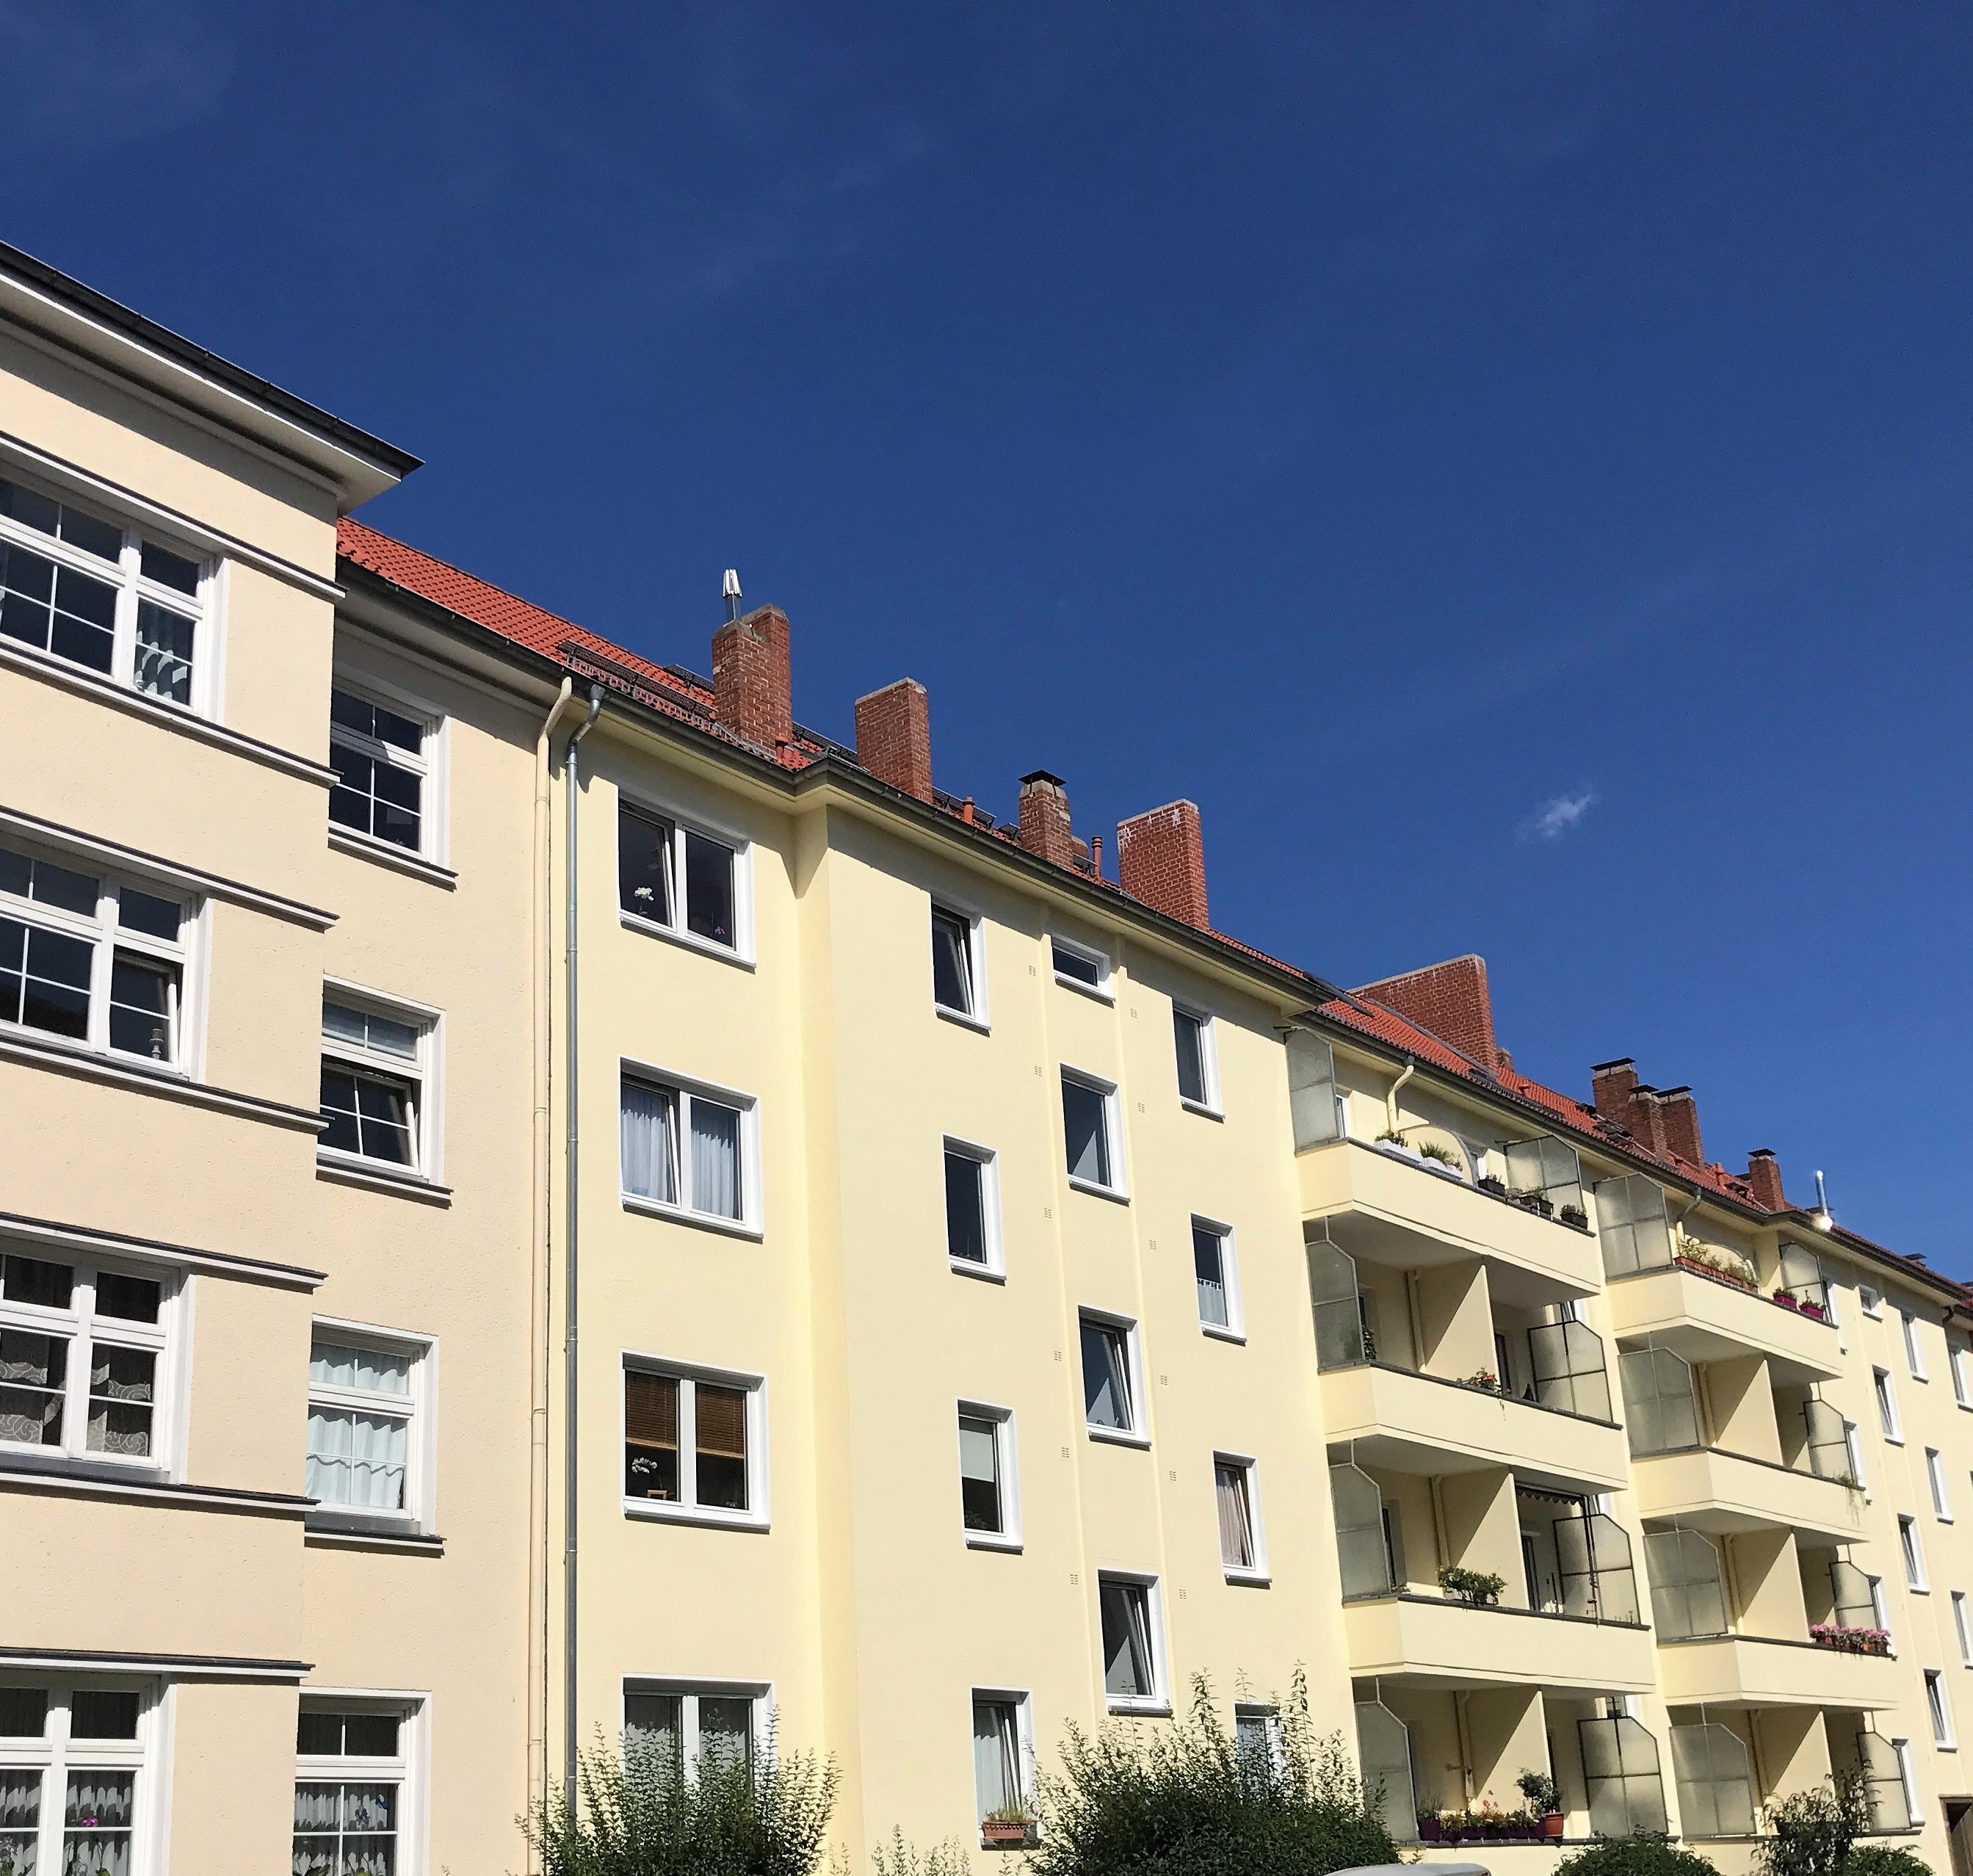 VERKAUFT: LIST - Großzügige Maisonette-Wohnung mit 2 Balkonen